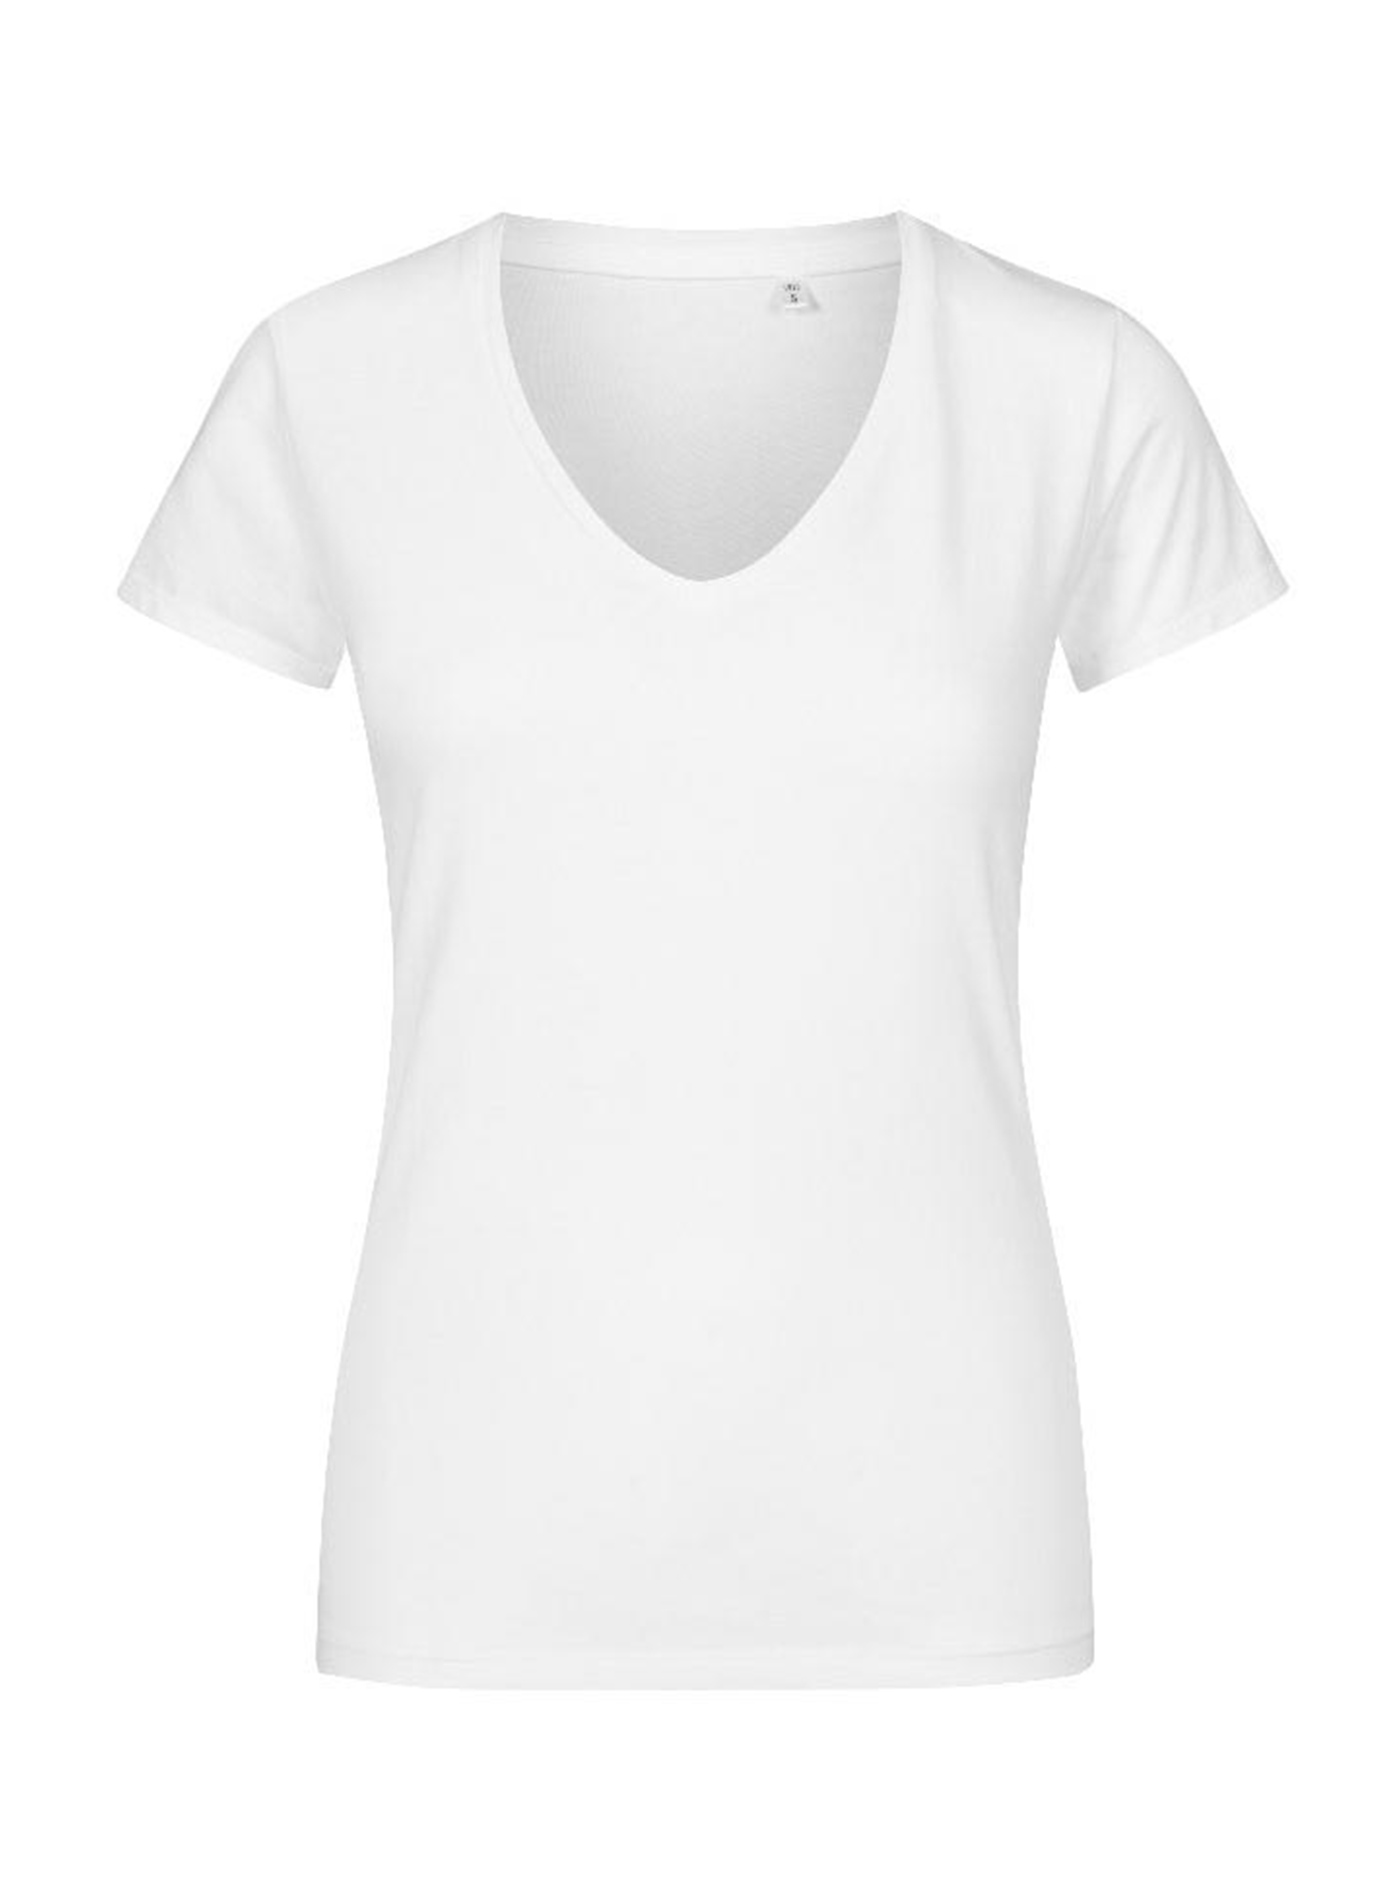 Dámské tričko Promodoro - Bílá M